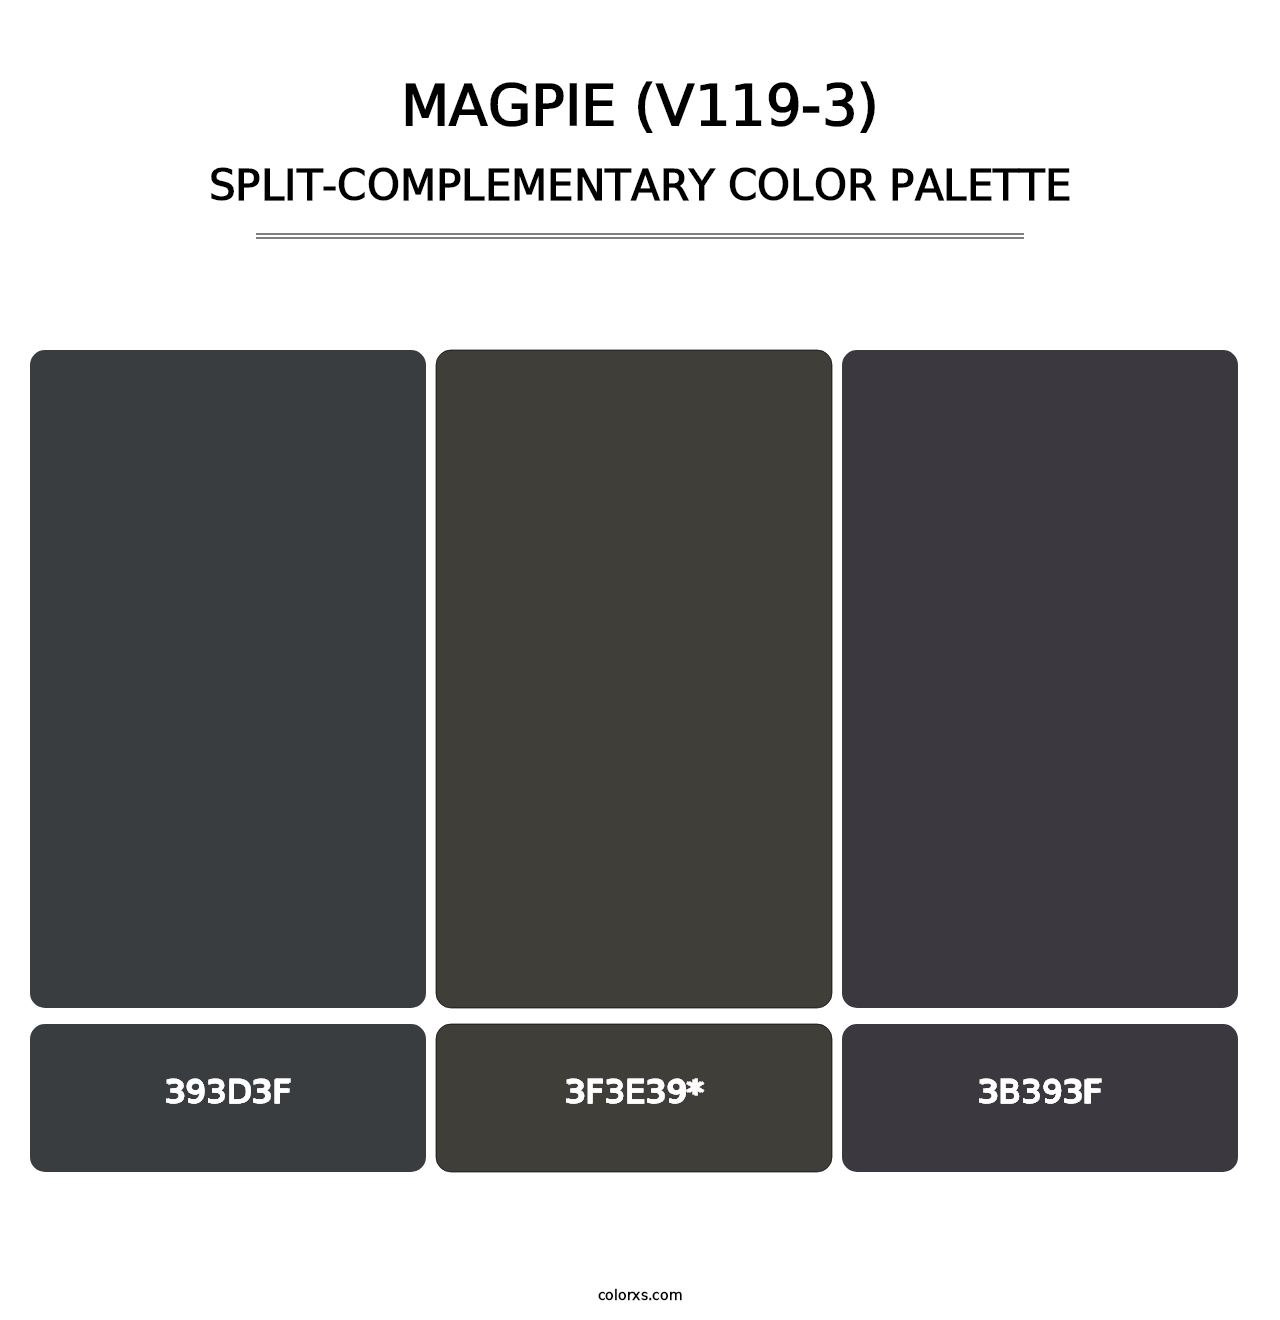 Magpie (V119-3) - Split-Complementary Color Palette